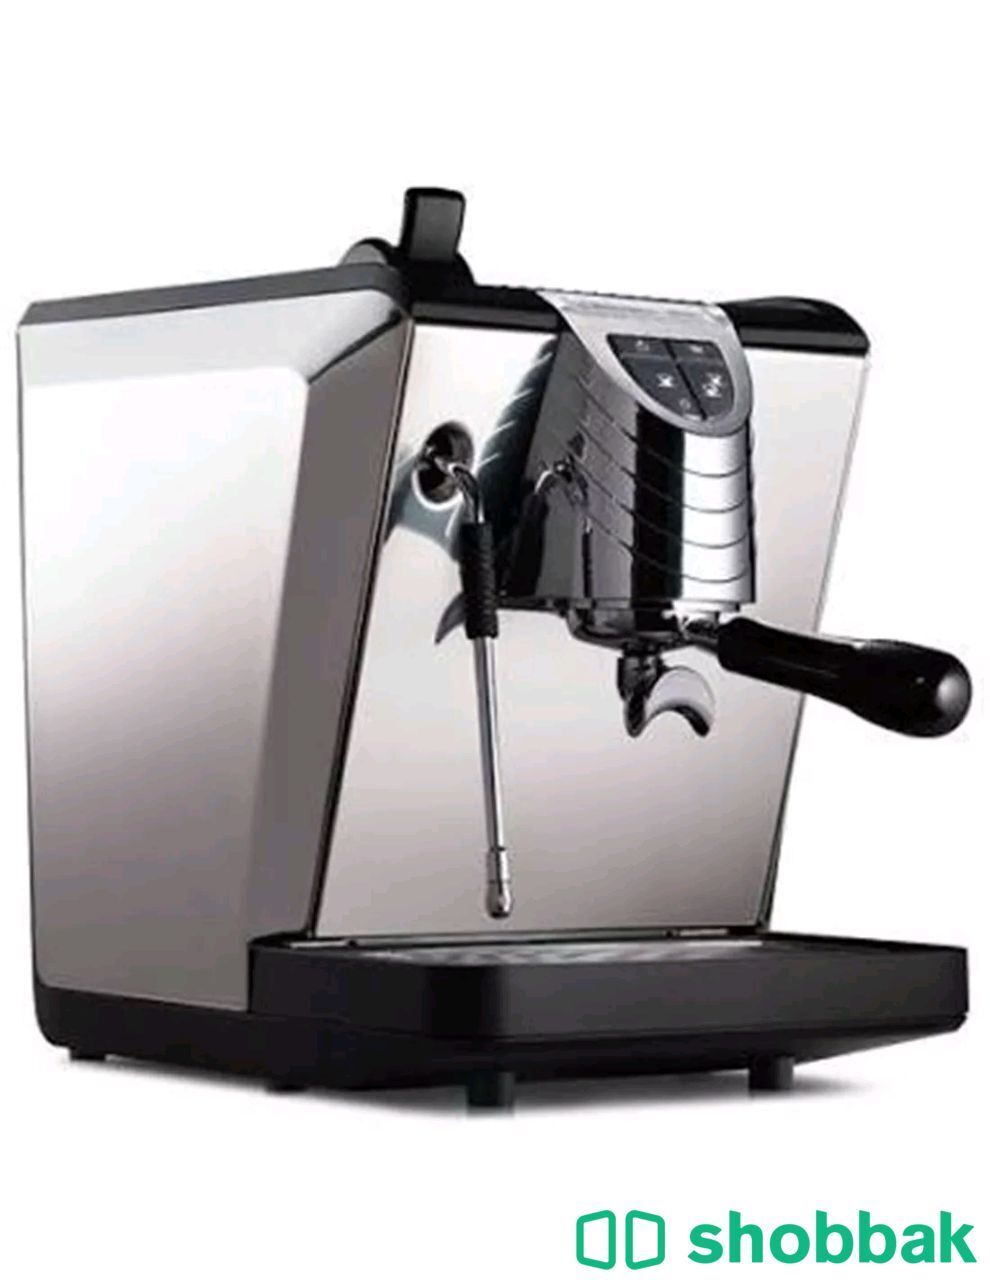 مكينة قهوة- نوڤا سيميونللي اوسكار  II جدييدة Shobbak Saudi Arabia